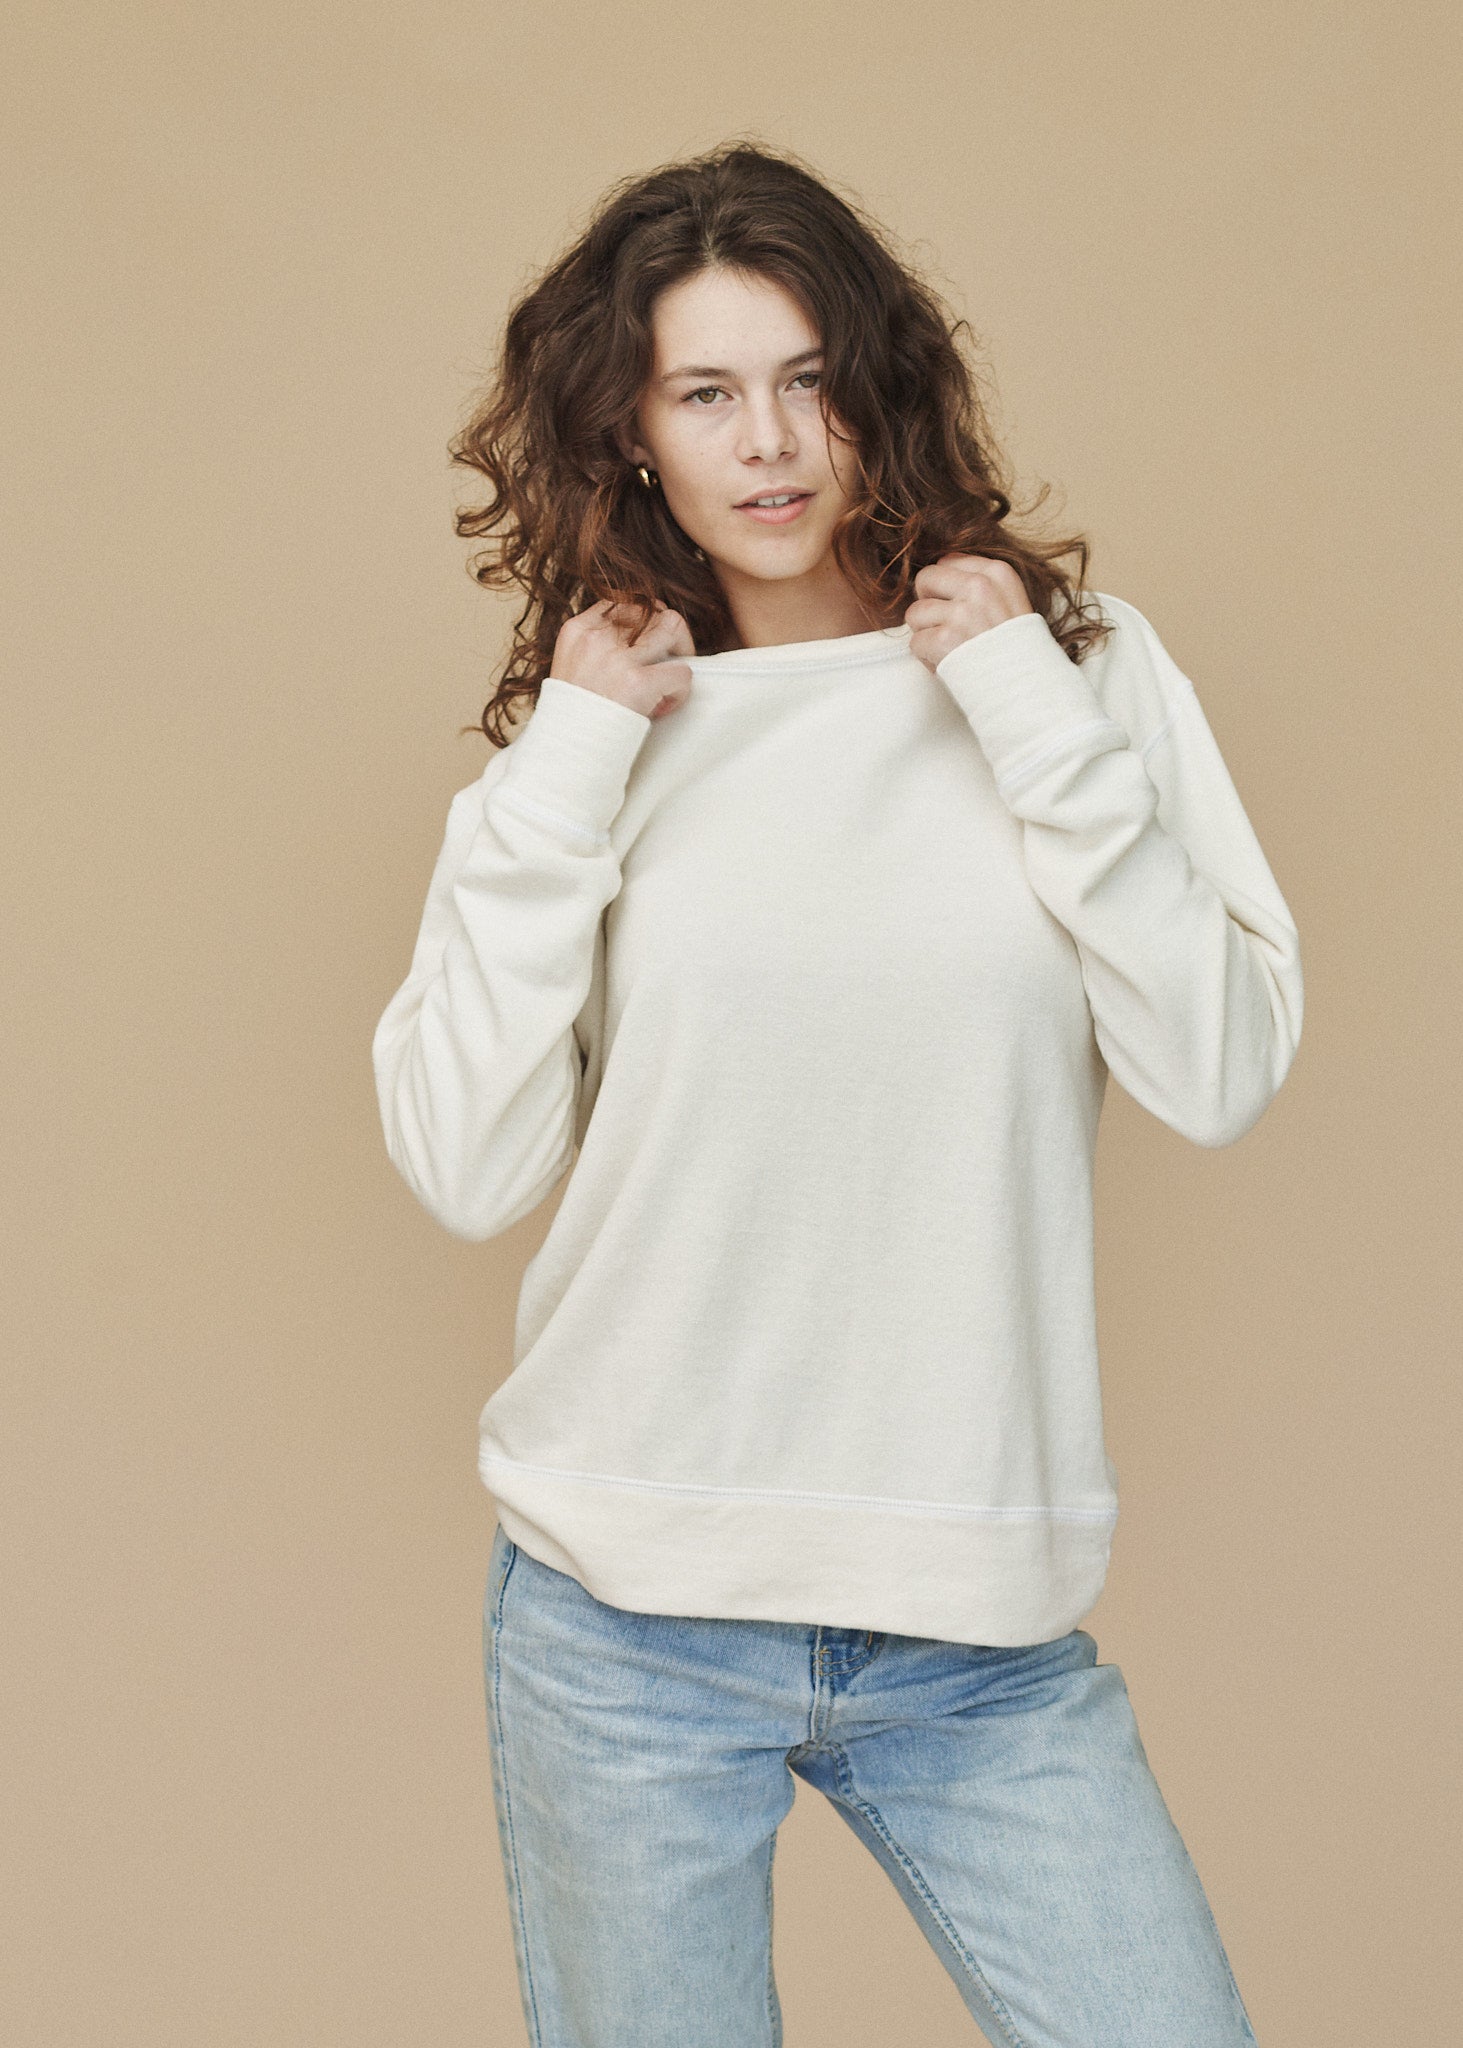 Tahoe Sweatshirt | Jungmaven Hemp Clothing & Accessories / model_desc: Sydney is 5’7” wearing S